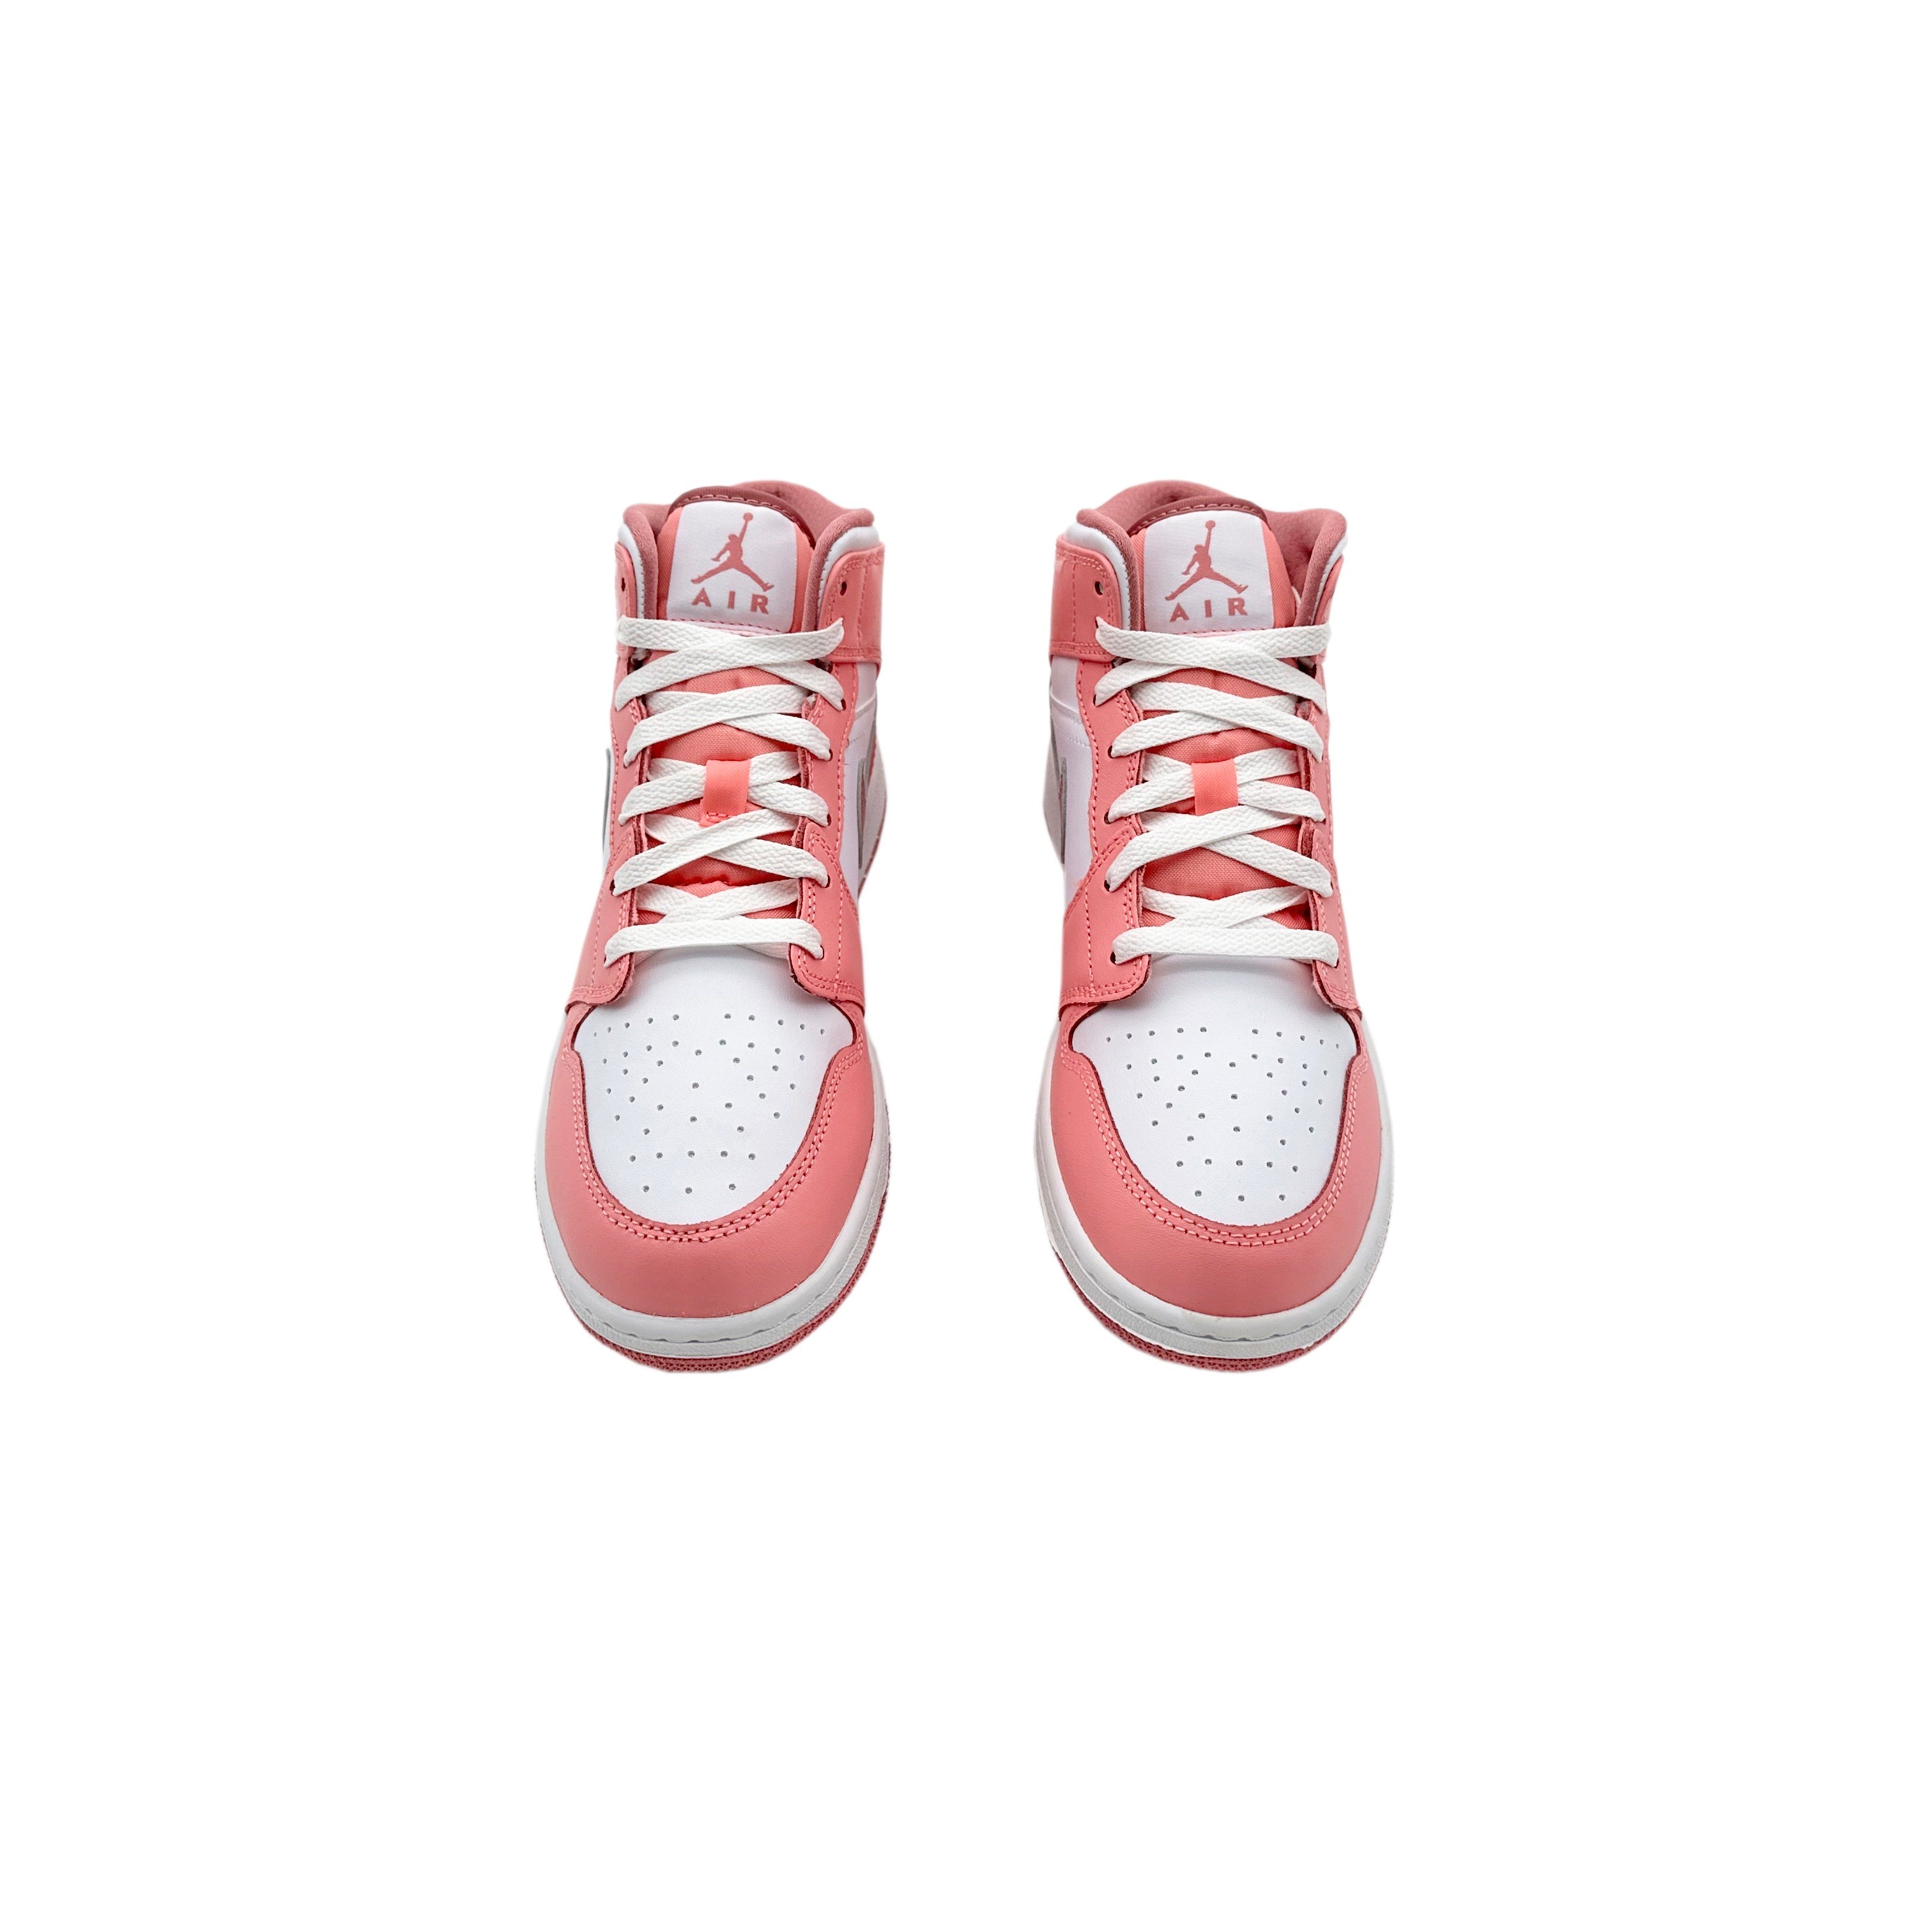 Nike Air Jordan 1 Mid Valentines Berry Pink GS